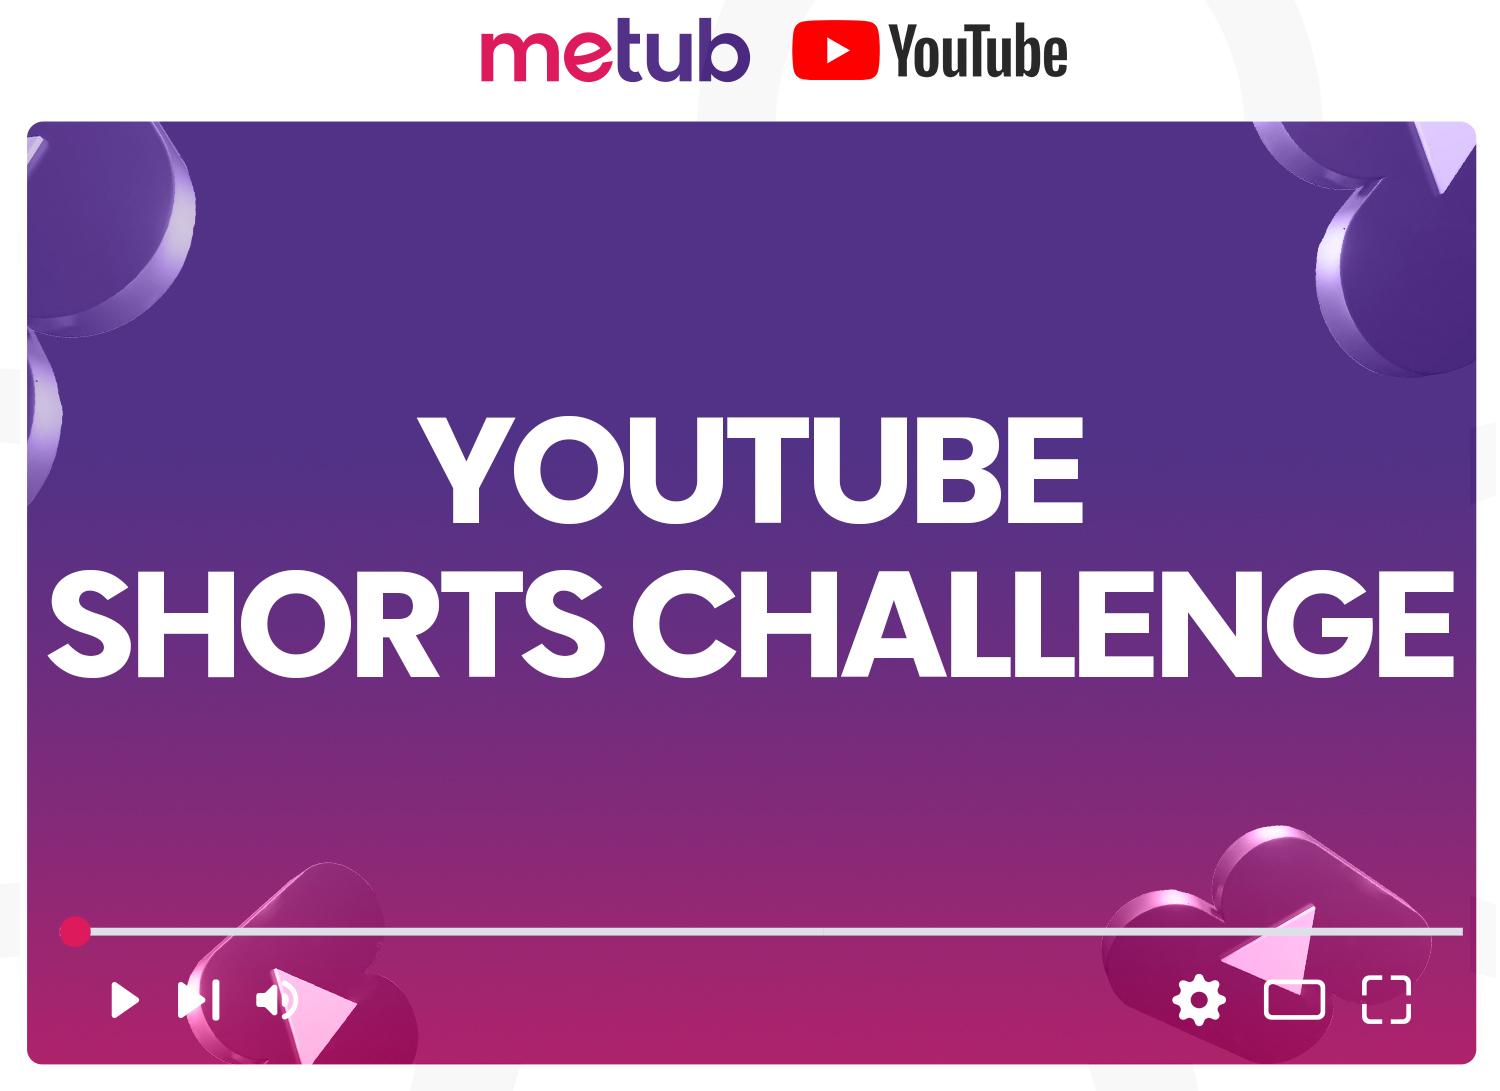 Lộ diện nhà sáng tạo nội dung tăng kỷ lục 2,7 triệu lượt đăng ký trong 1 tháng sau “YouTube Shorts Challenge” của Metub - Ảnh 8.